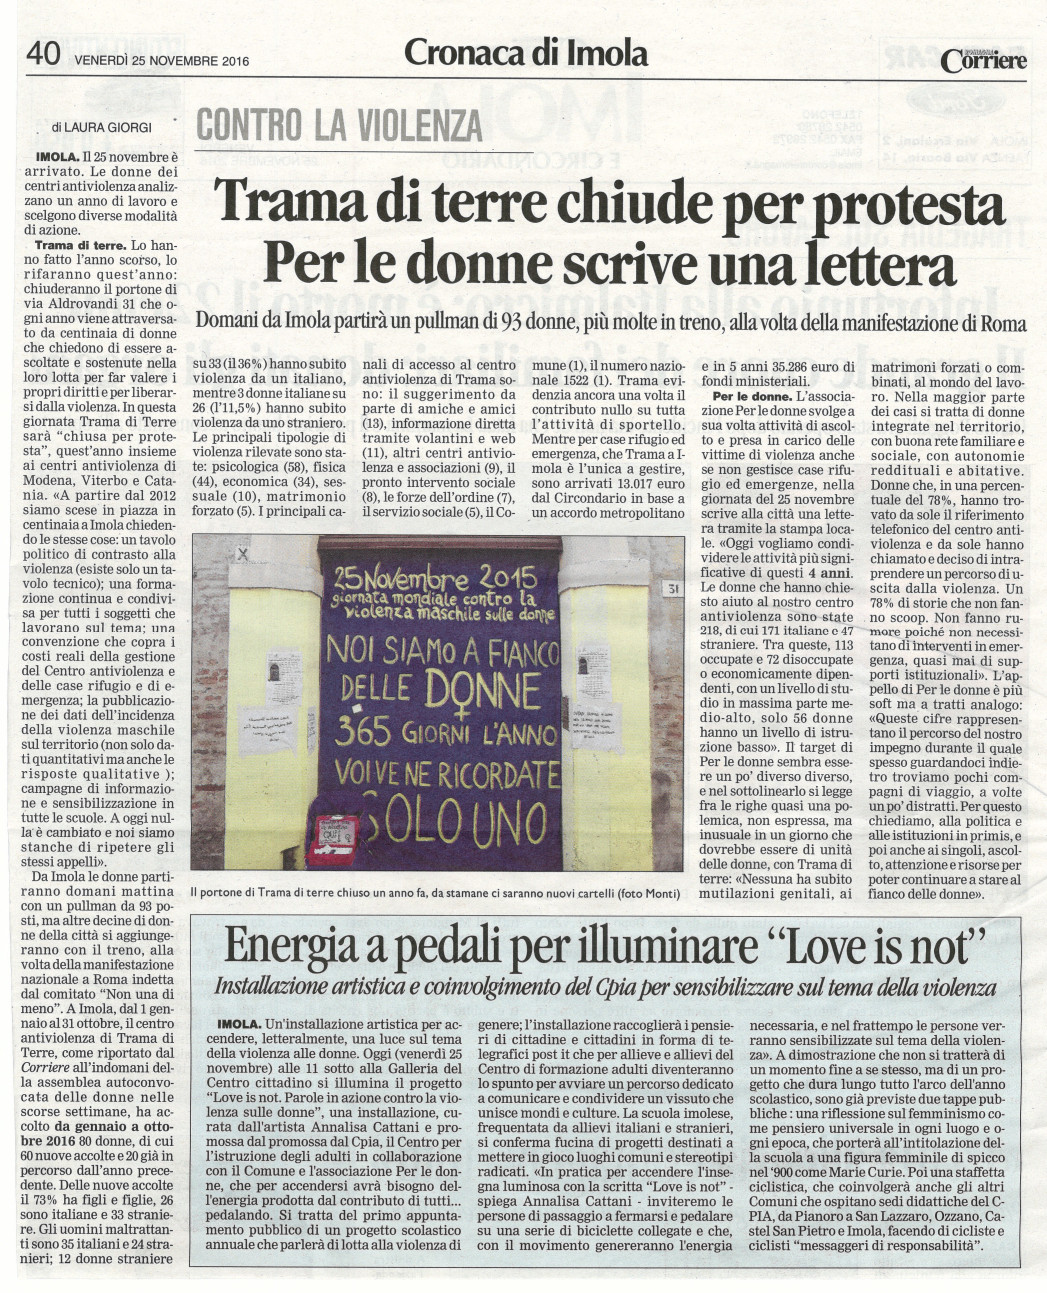 Corriere di Romagna, 25 novembre 2016, articolo di Laura Giorgi